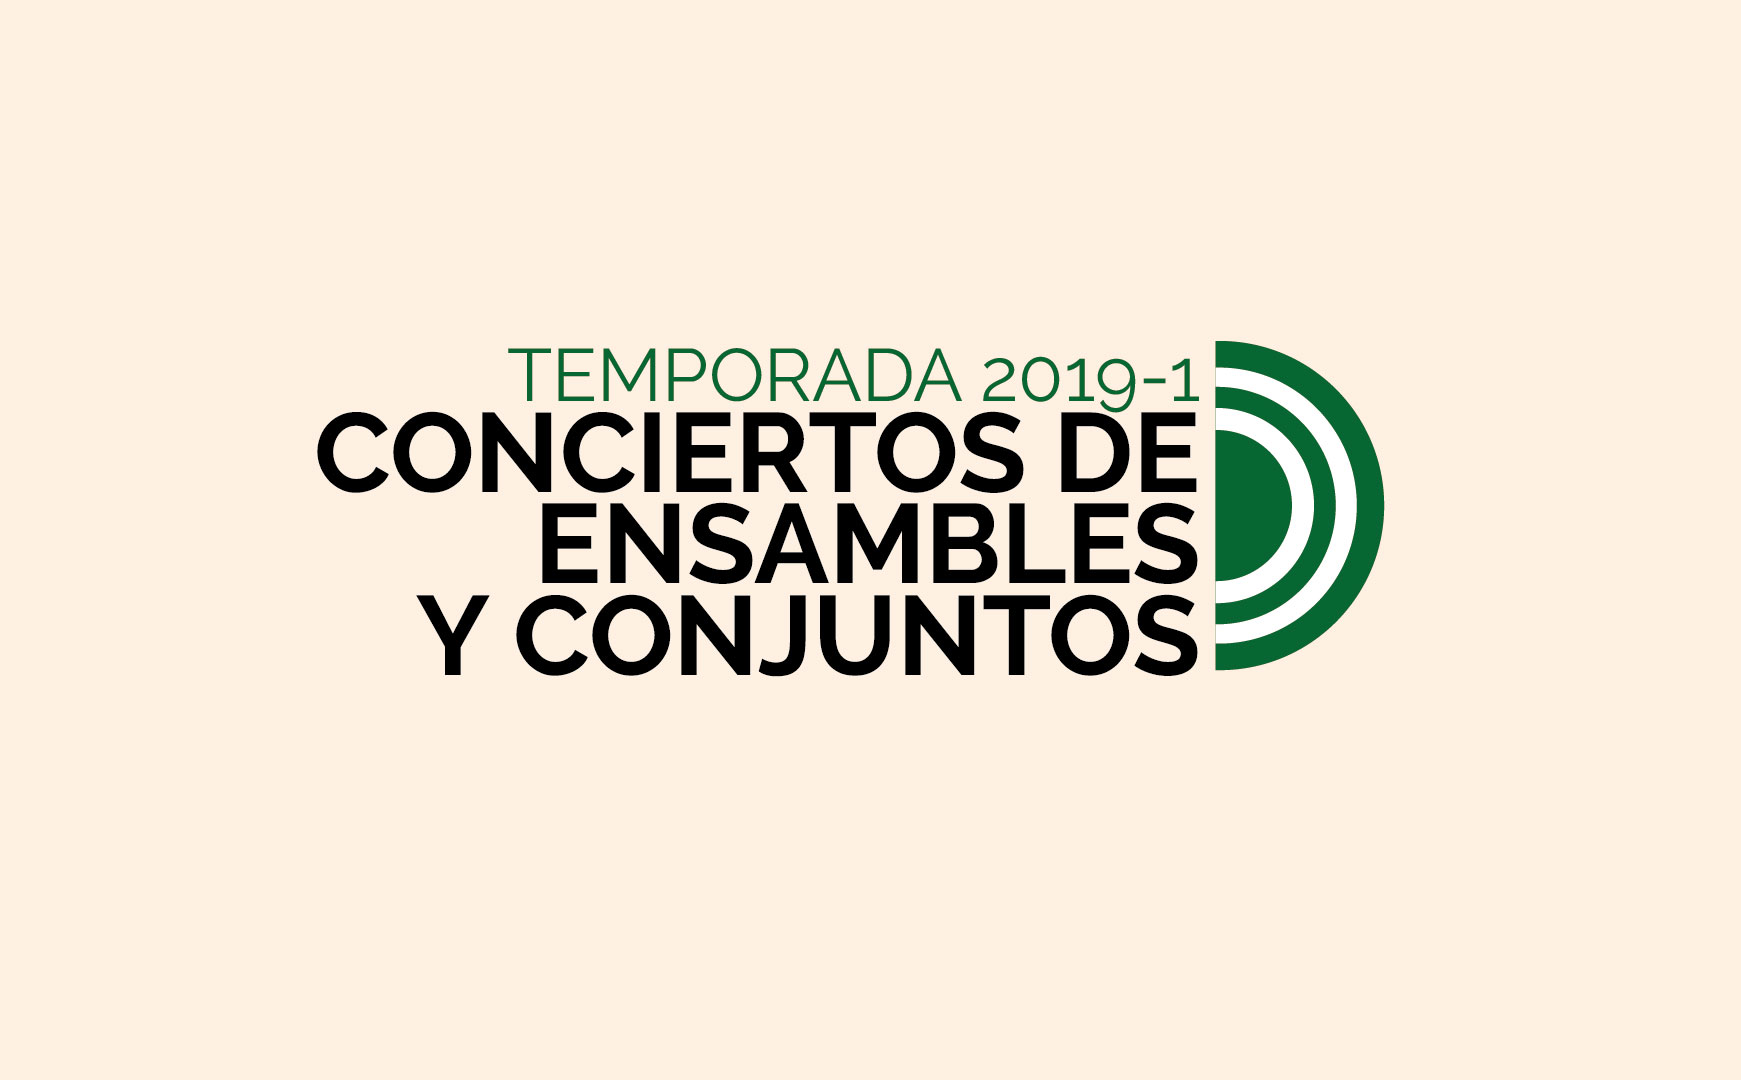 Este concierto hace parte de la Temporada 2019-1 de Conciertos de Ensambles y Conjuntos de la Universidad de los Andes.